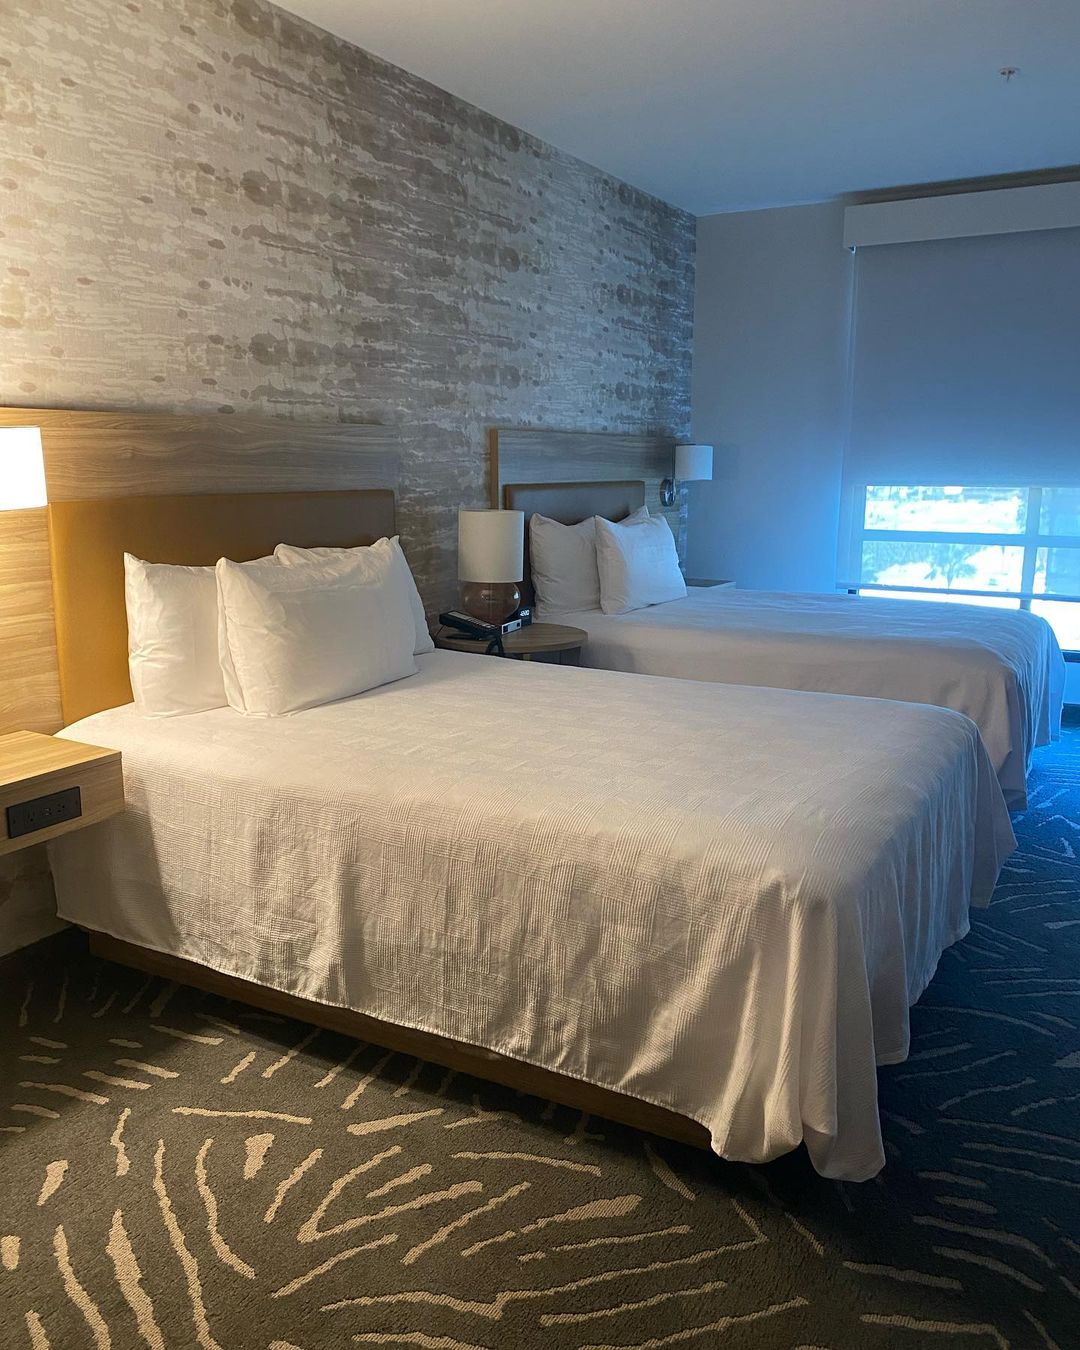 Room at Home2 Suites ist eines der besten Hotels in der Nähe von Disneyland California